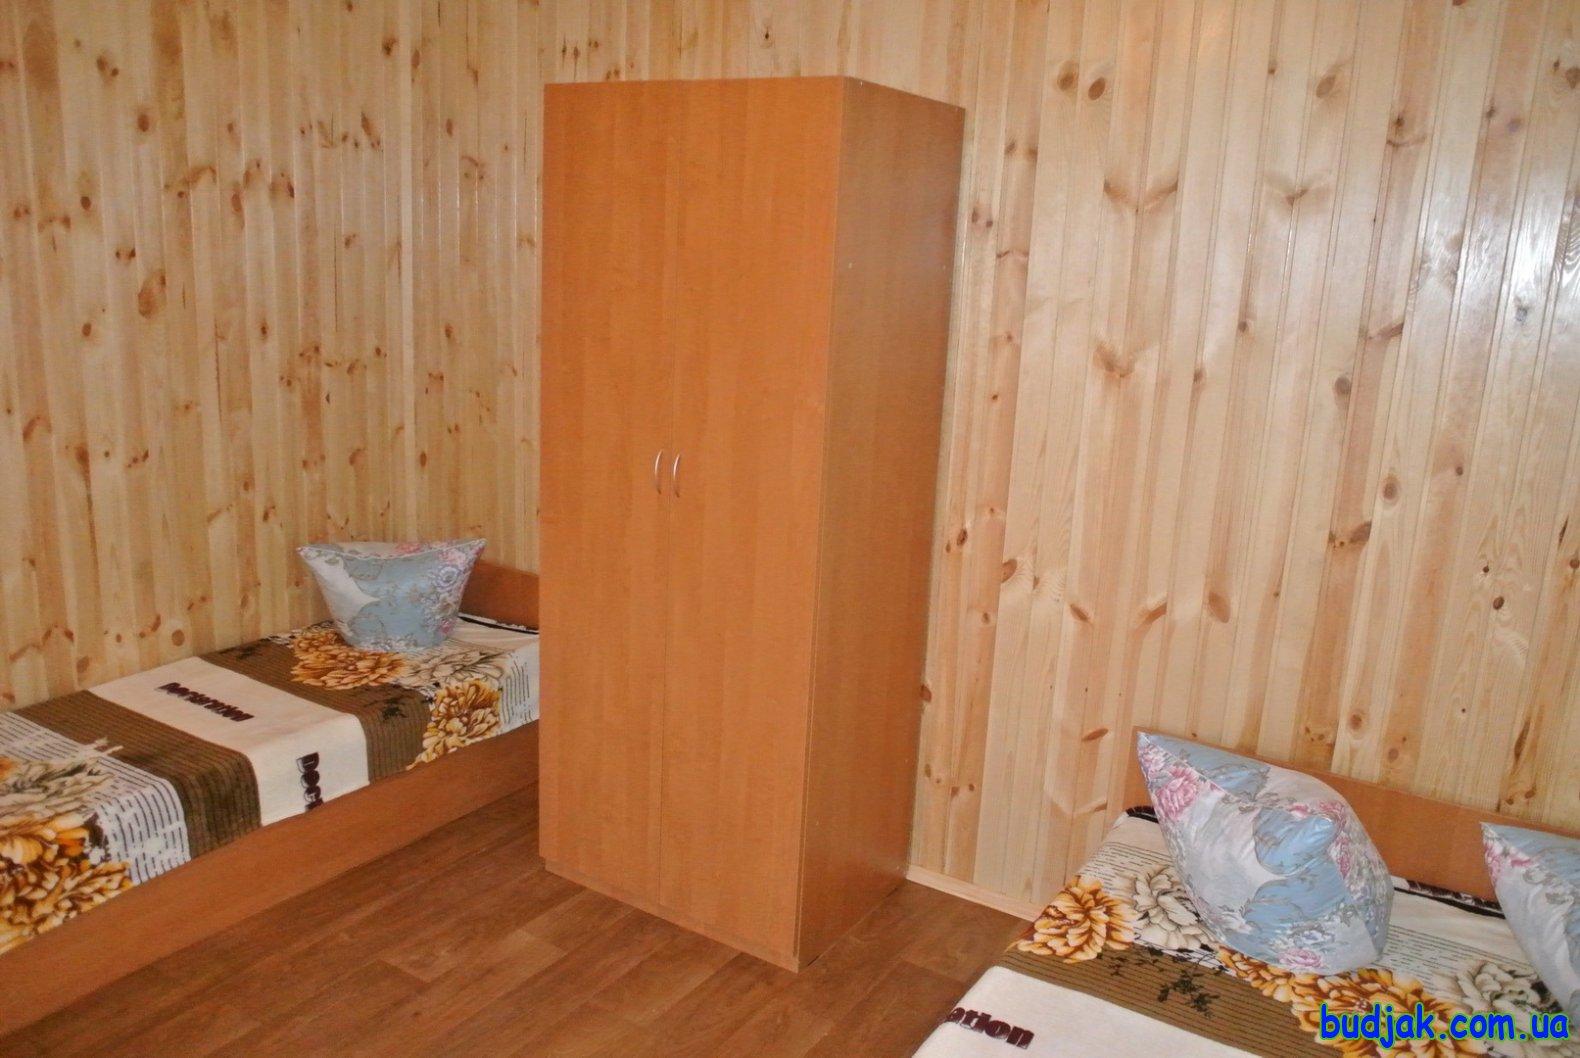 Частный коттедж отдыха «Усадьба» на курорте Приморское. Фото № 10272